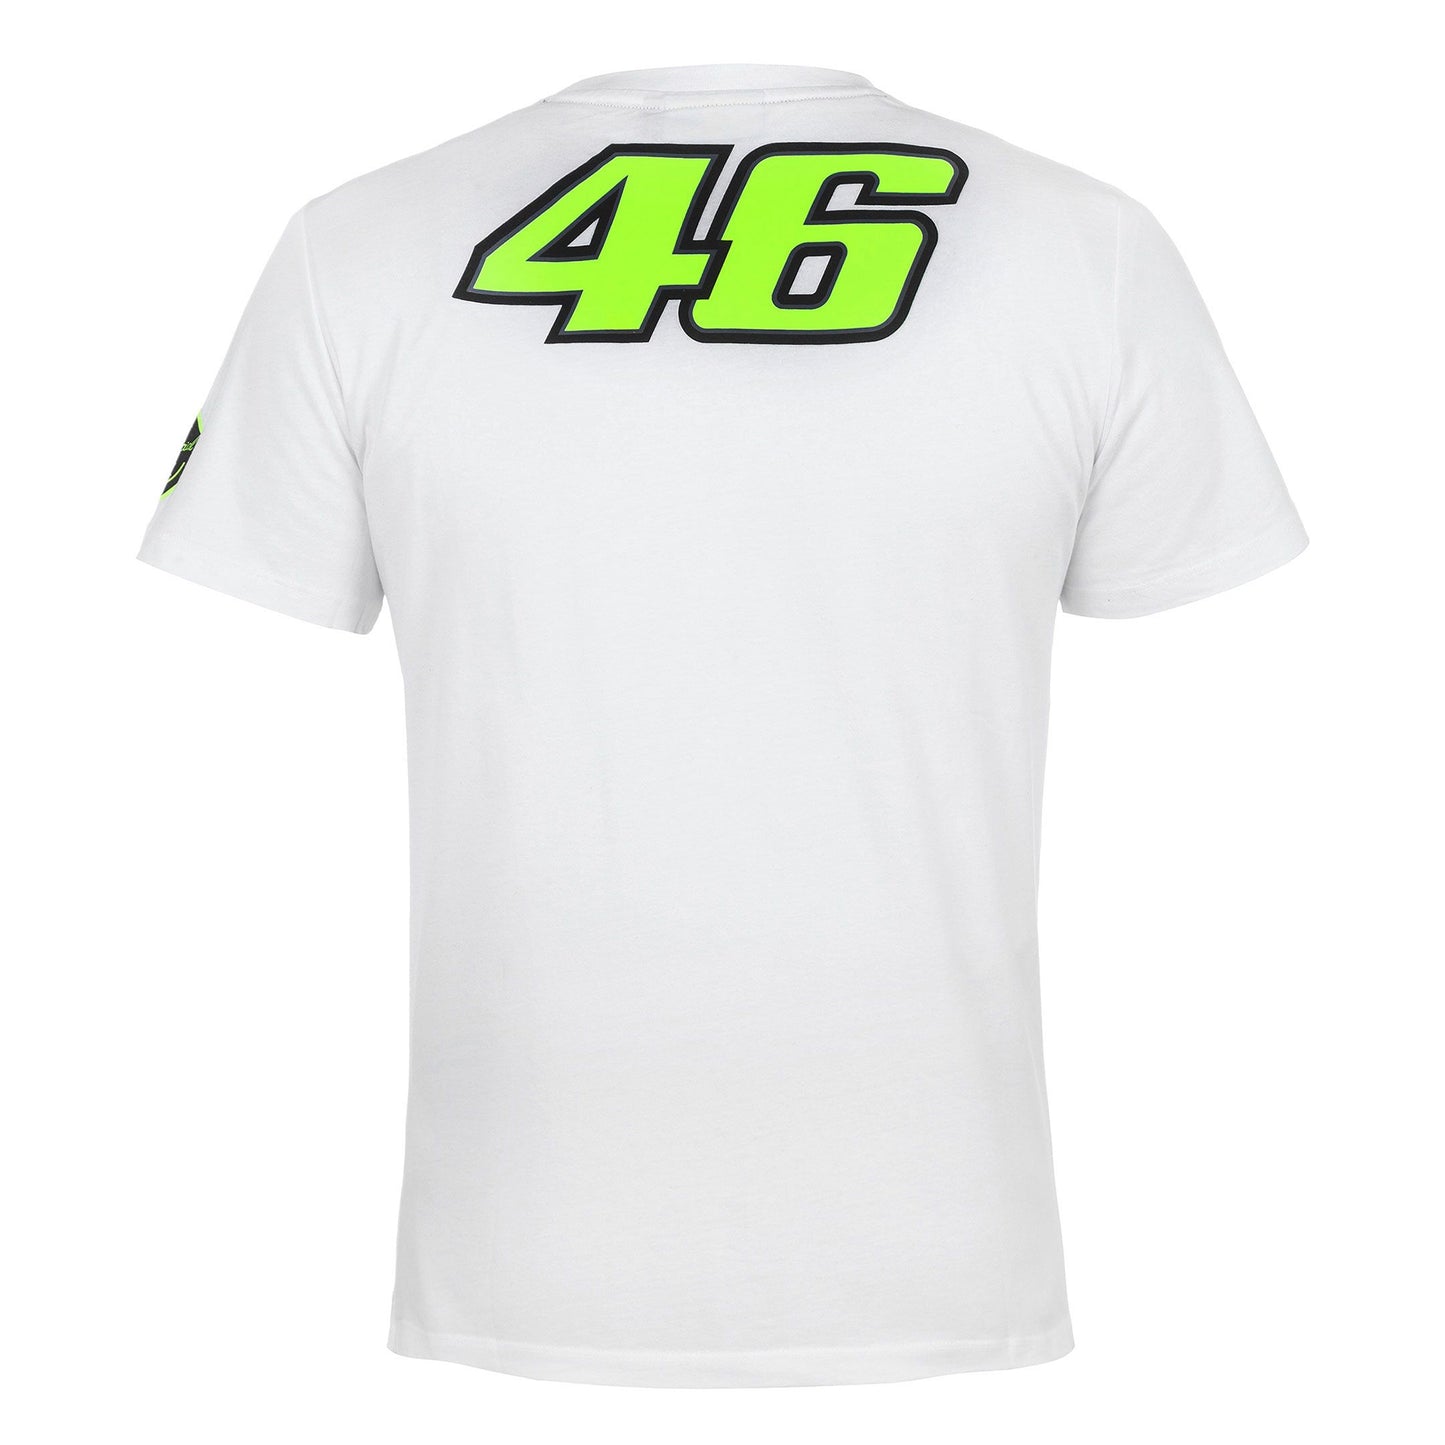 VR46 Doctor T-Shirt - White